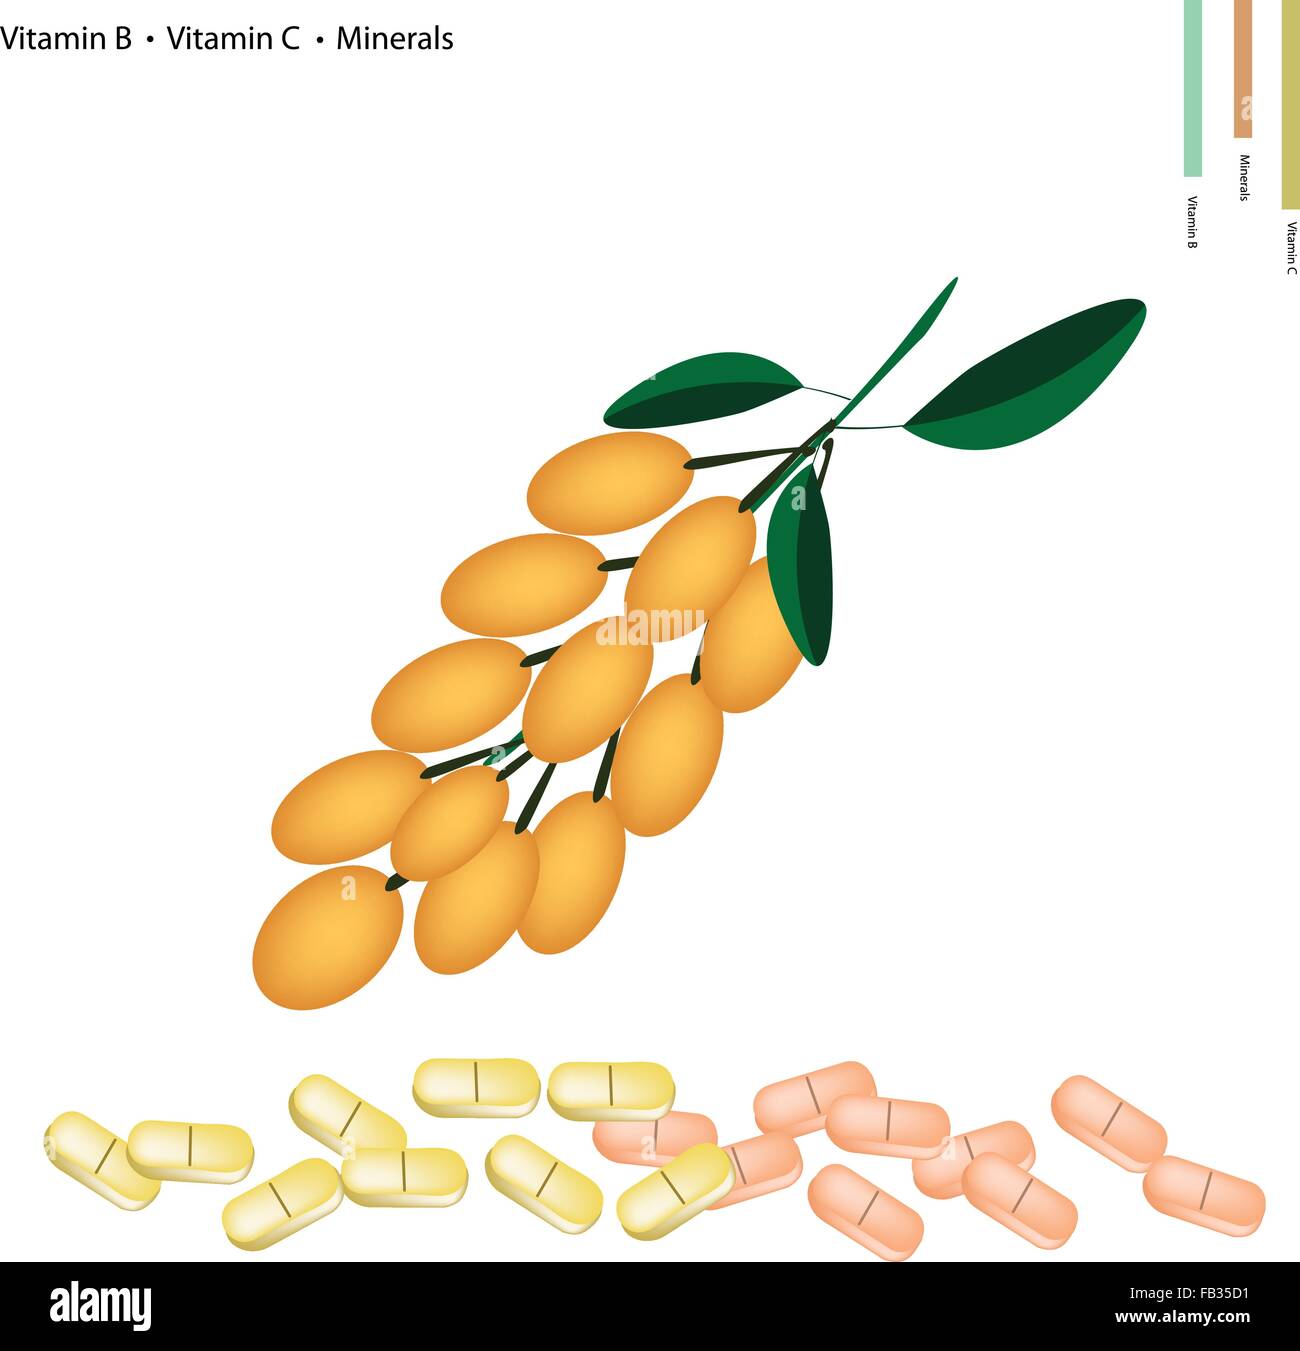 Concept de soins, Illustration de raisin birmans aux vitamines B et de vitamine C et de minéraux comprimé, nutriment essentiel pour la vie. Illustration de Vecteur